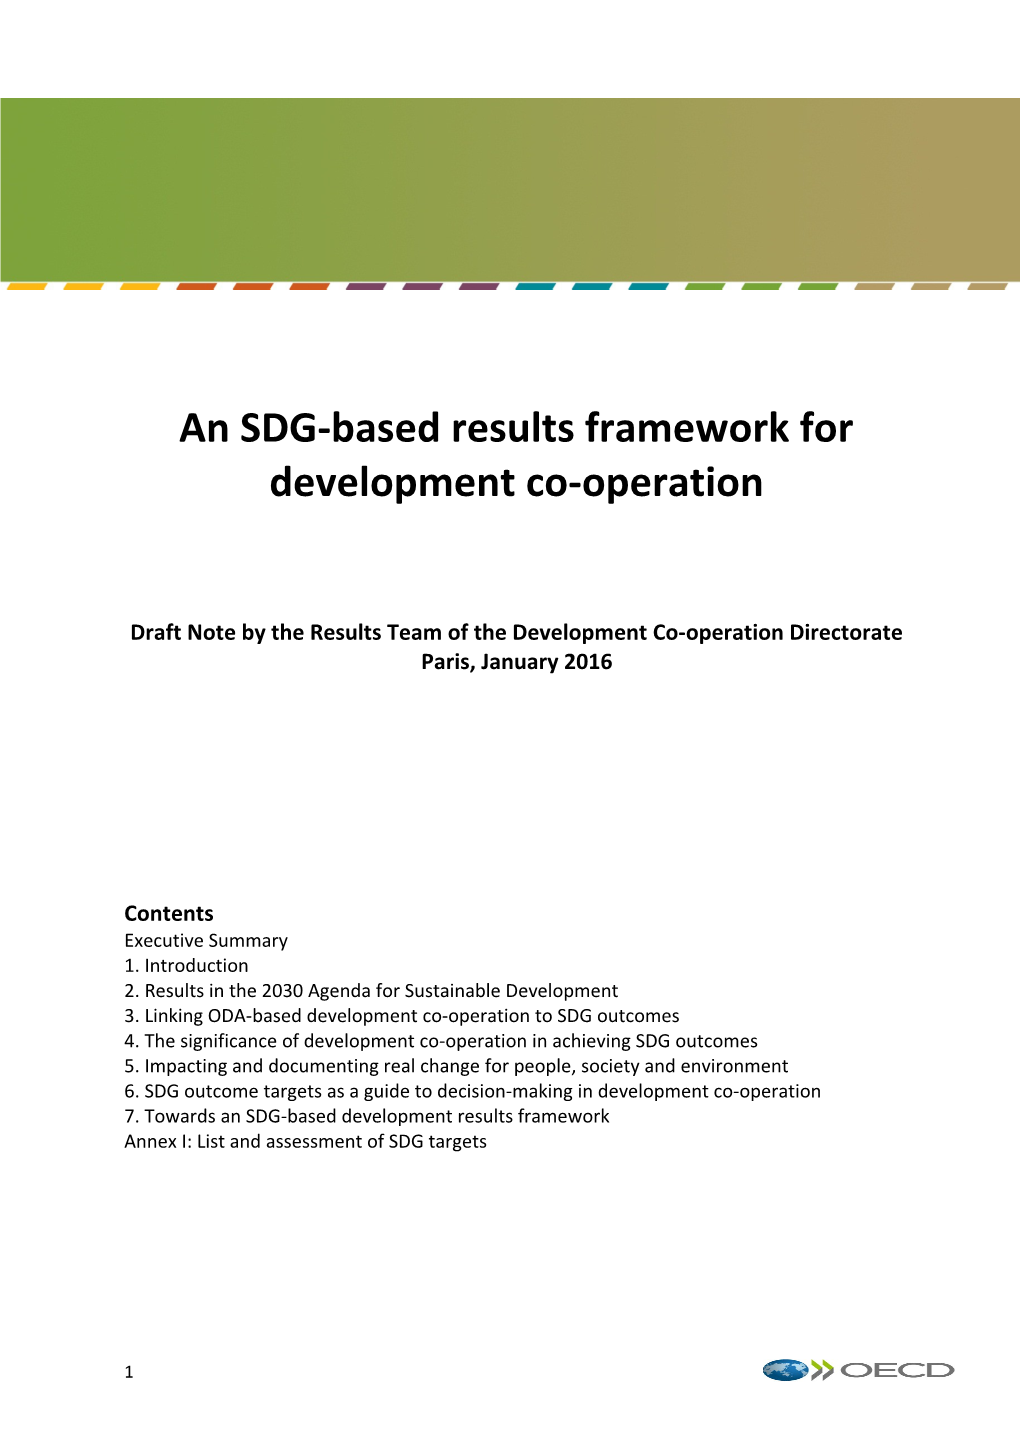 An SDG-Based Results Framework for Development Co-Operation